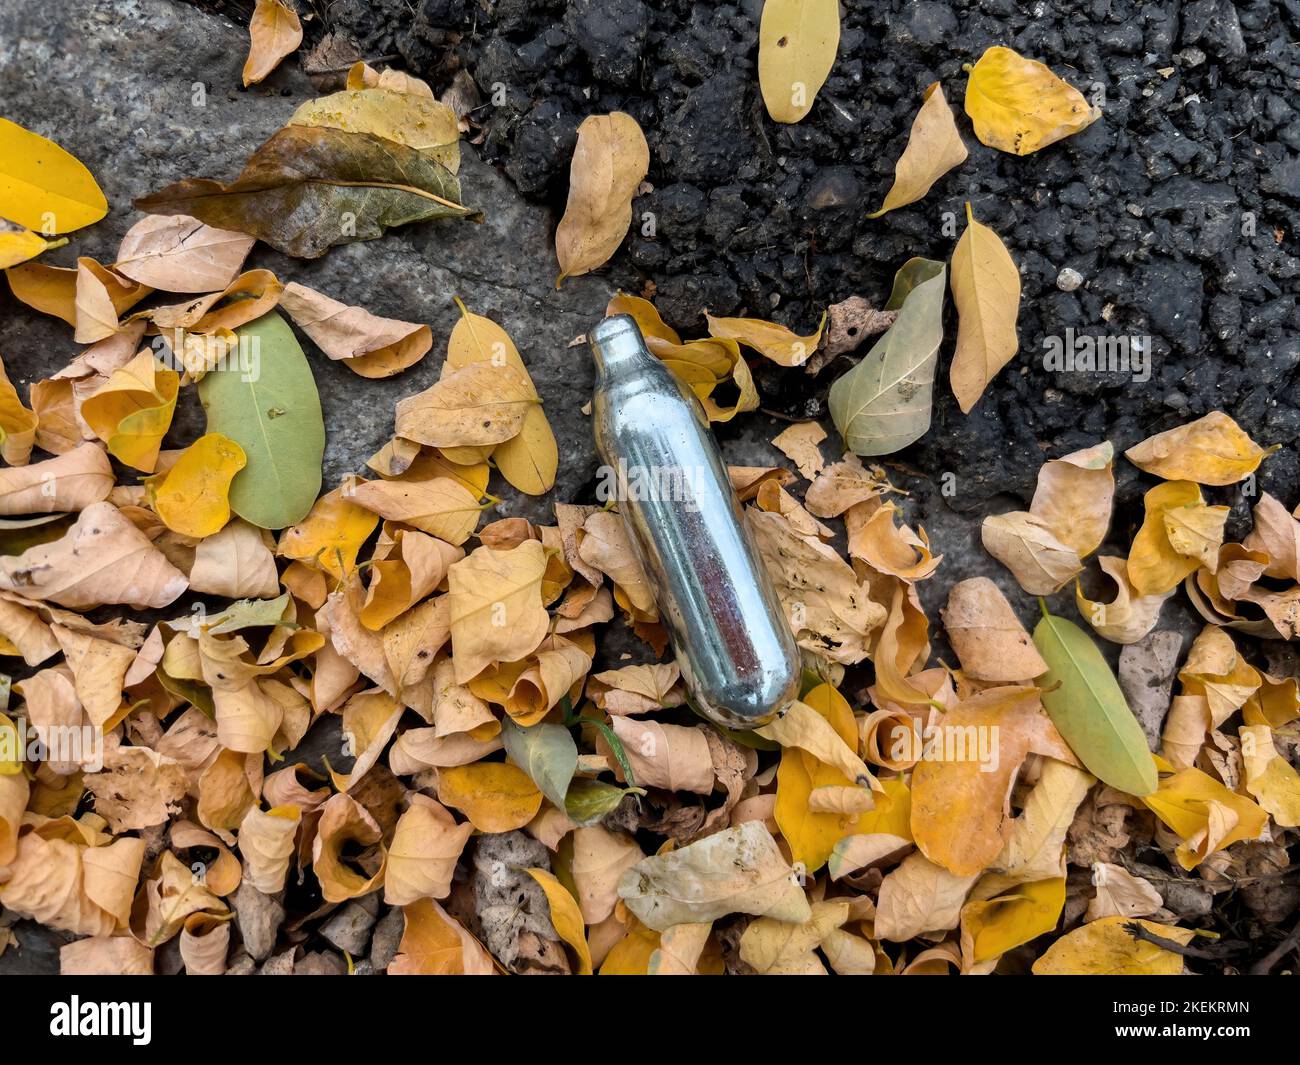 Utilisé les canisters d'oxyde nitreux jetés sur le sol dans la ville - connu sous le nom de nos ou gaz riant - utilisés par les jeunes comme un médicament Banque D'Images